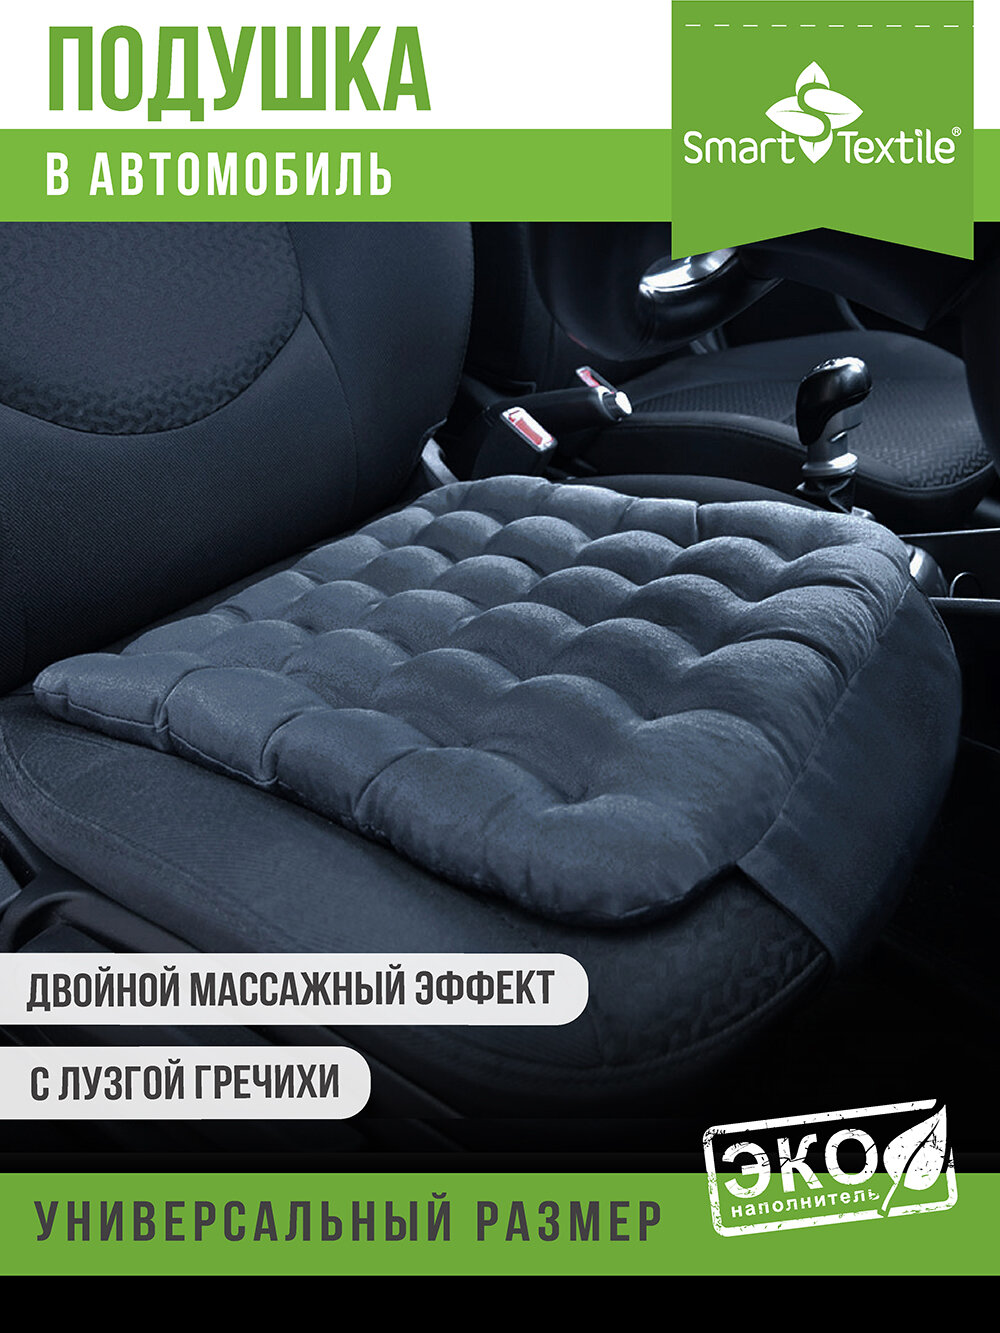 Анатомическая подушка для автокресла Smart Textile "Стандарт Авто", 40*40, серая